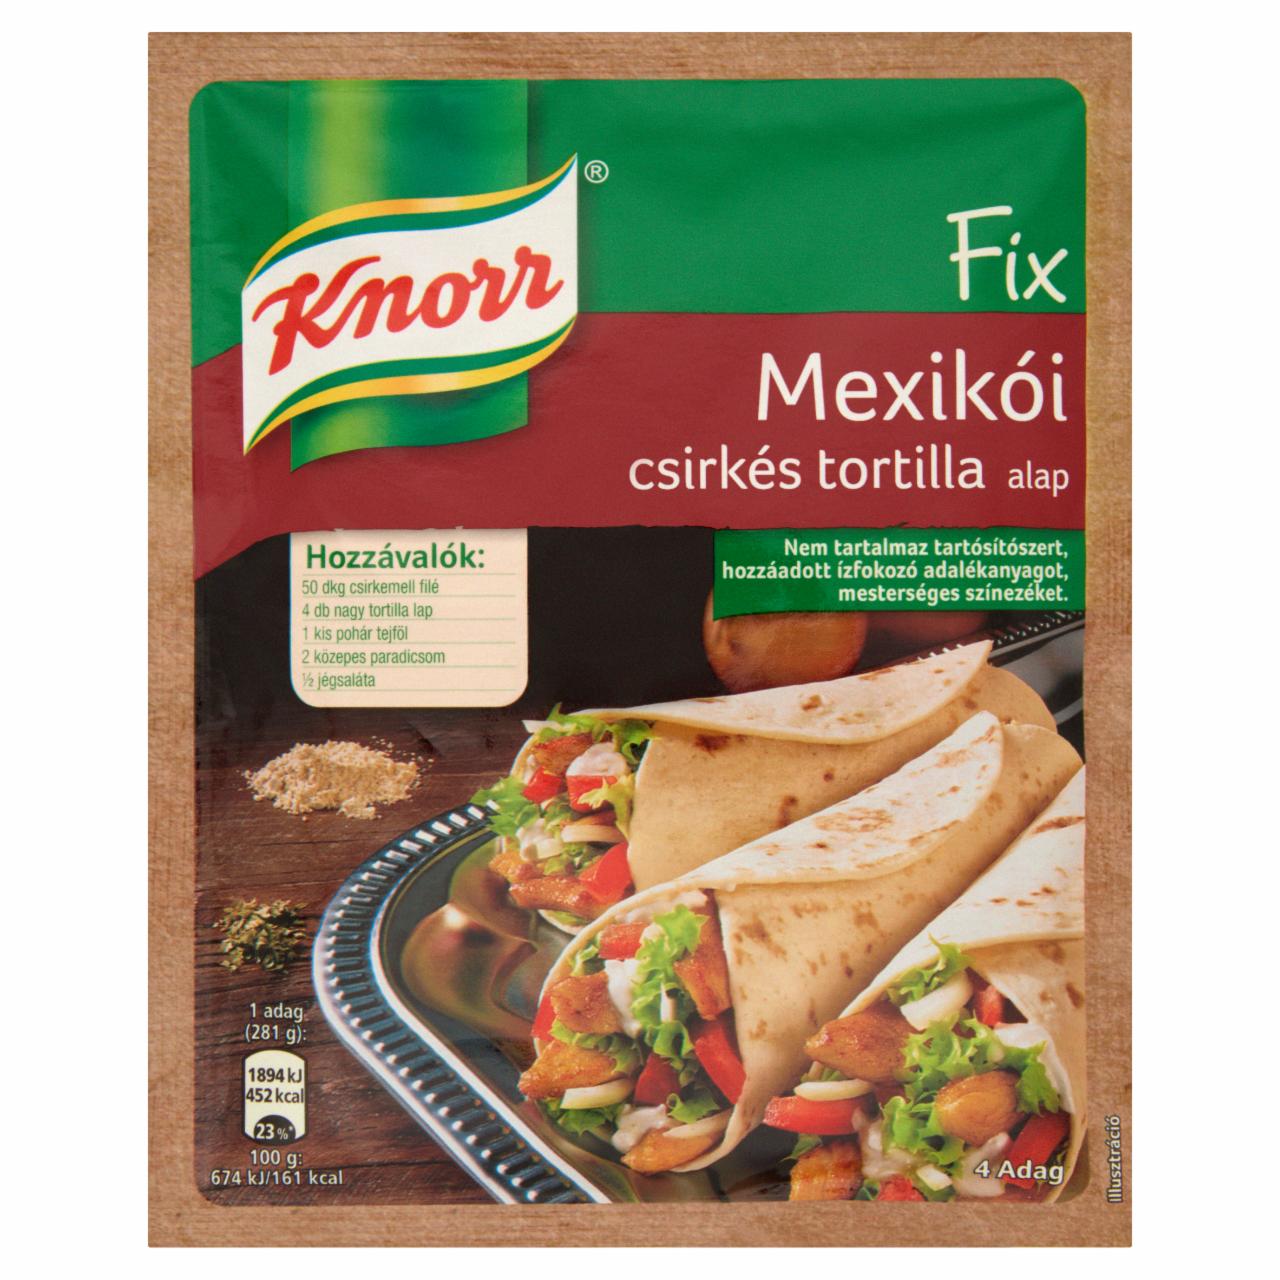 Képek - Knorr Fix mexikói csirkés tortilla alap 41 g